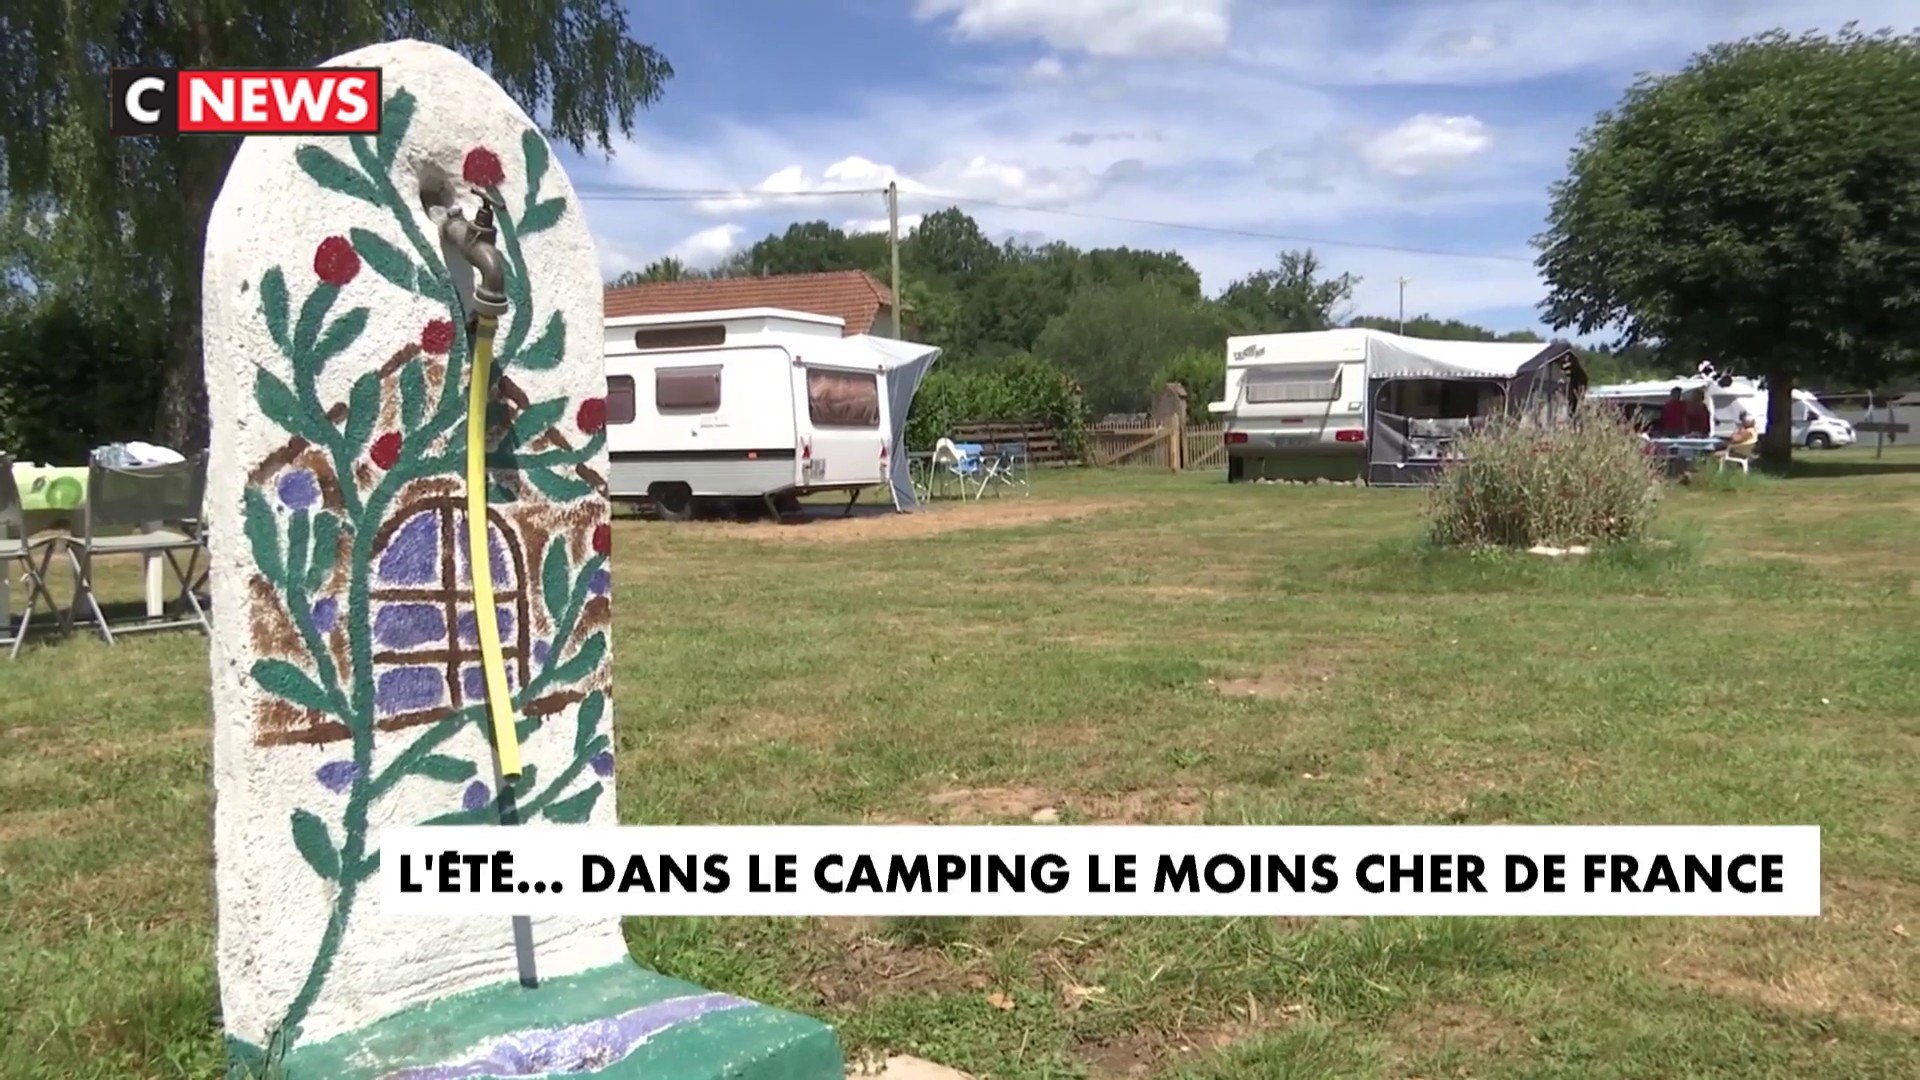 Le camping le moins cher de France - Vidéo Dailymotion